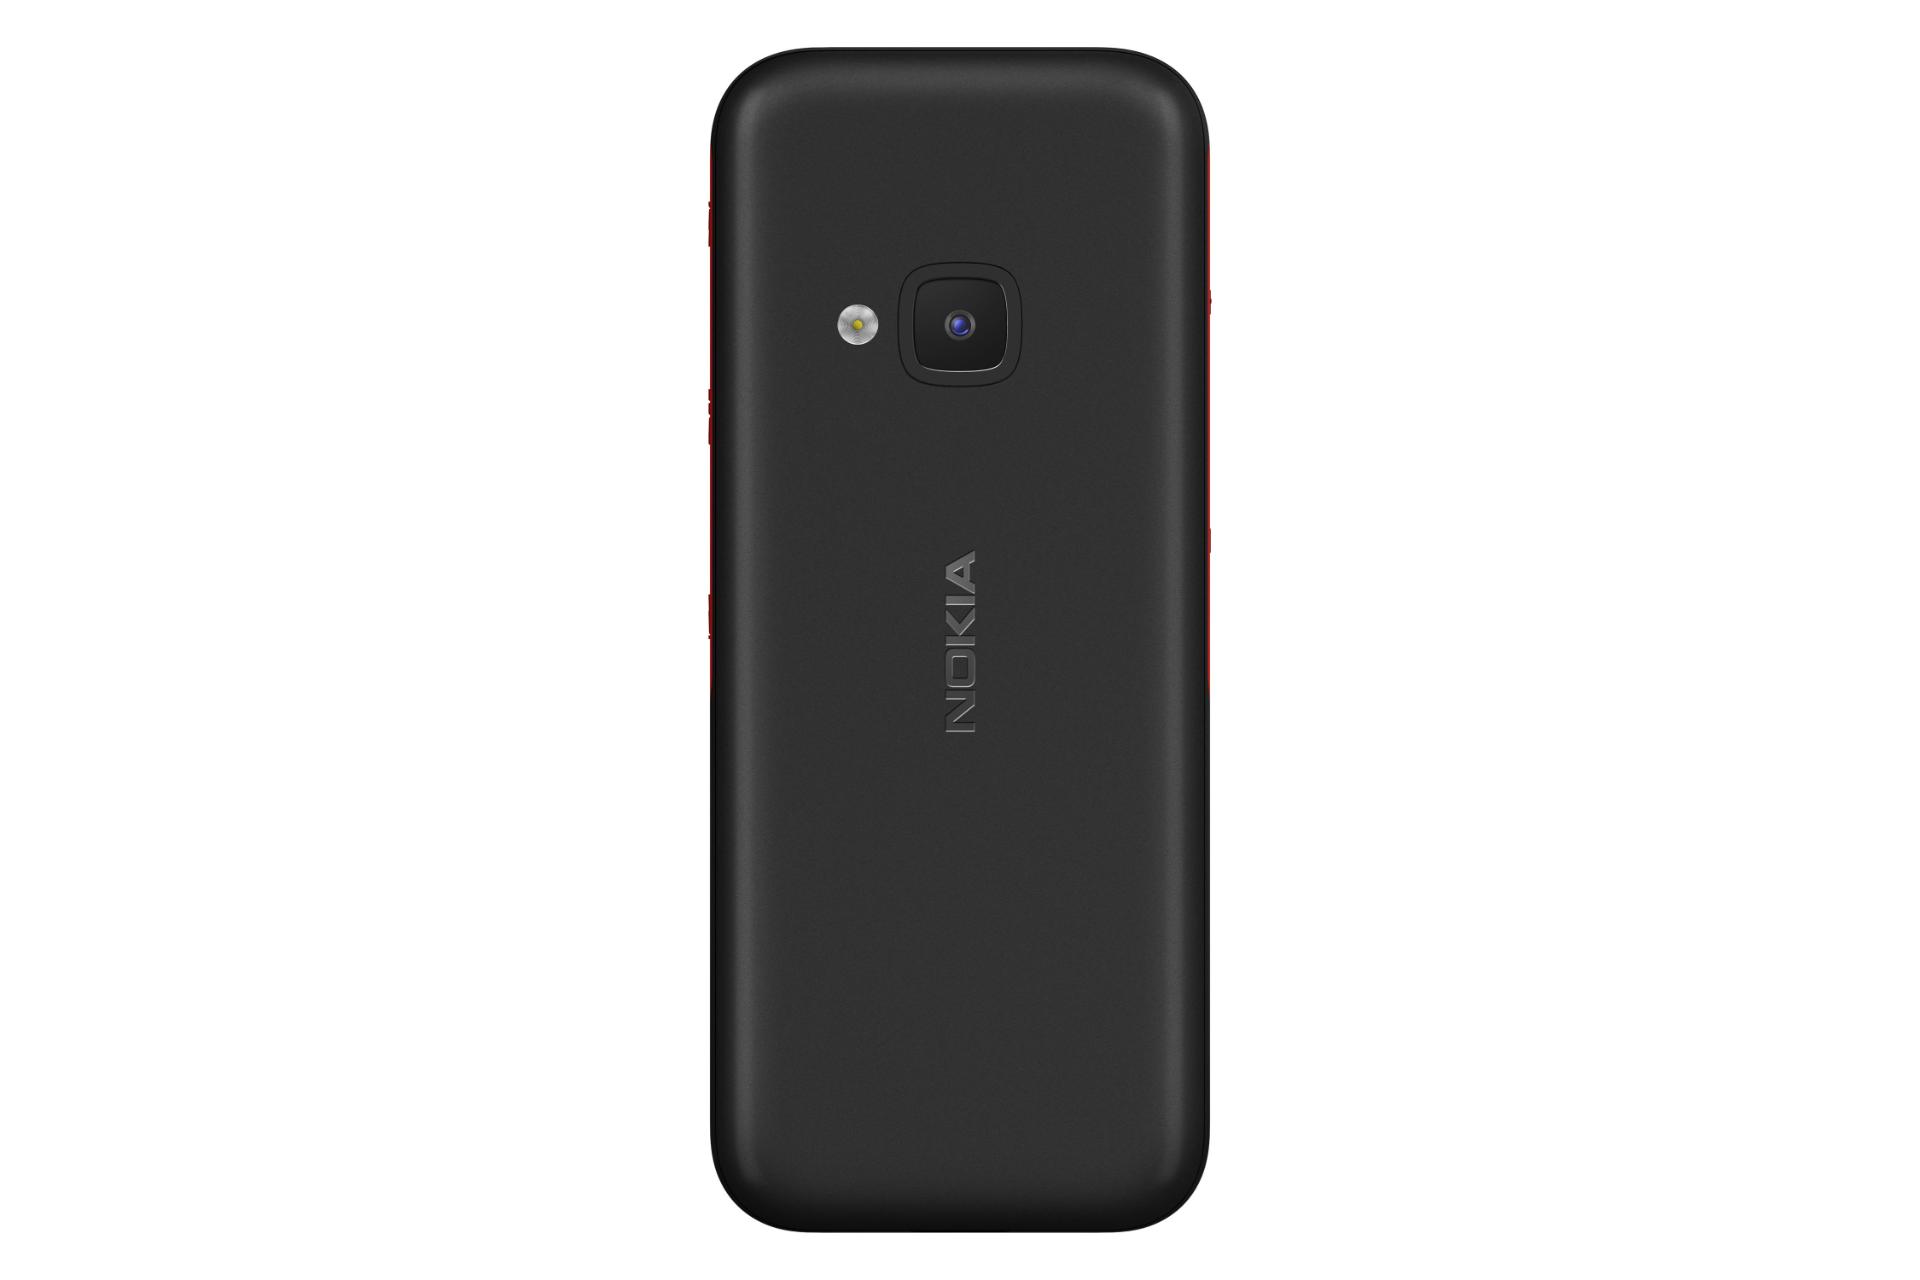 پنل پشت گوشی موبایل نوکیا 5310 نسخه 2024 مشکی و قرمز / Nokia 5310 2024